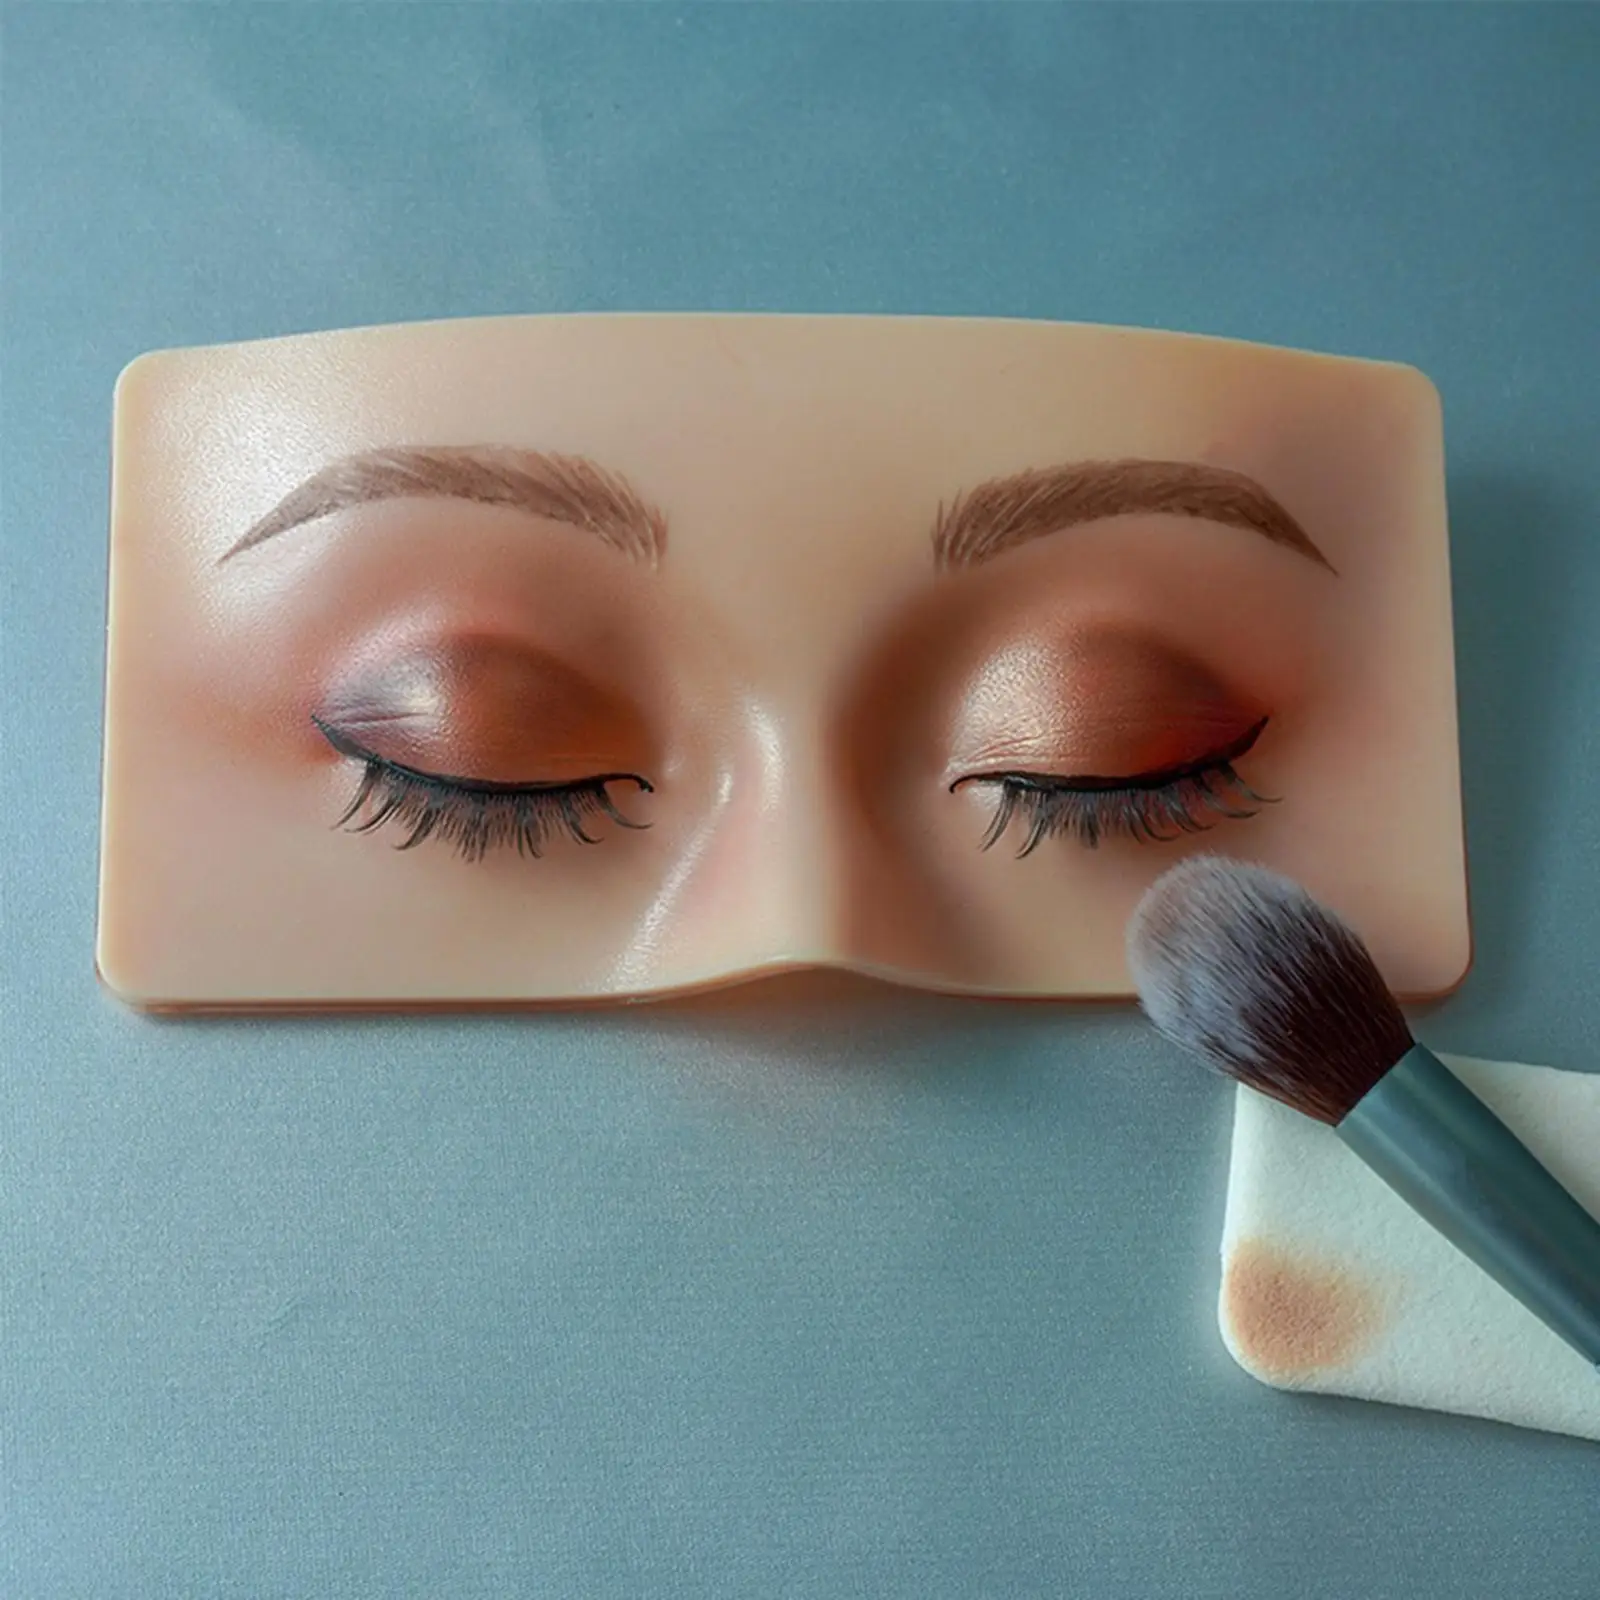 3D Makeup Practice face Reusable Practice Eyesmakeup for Training